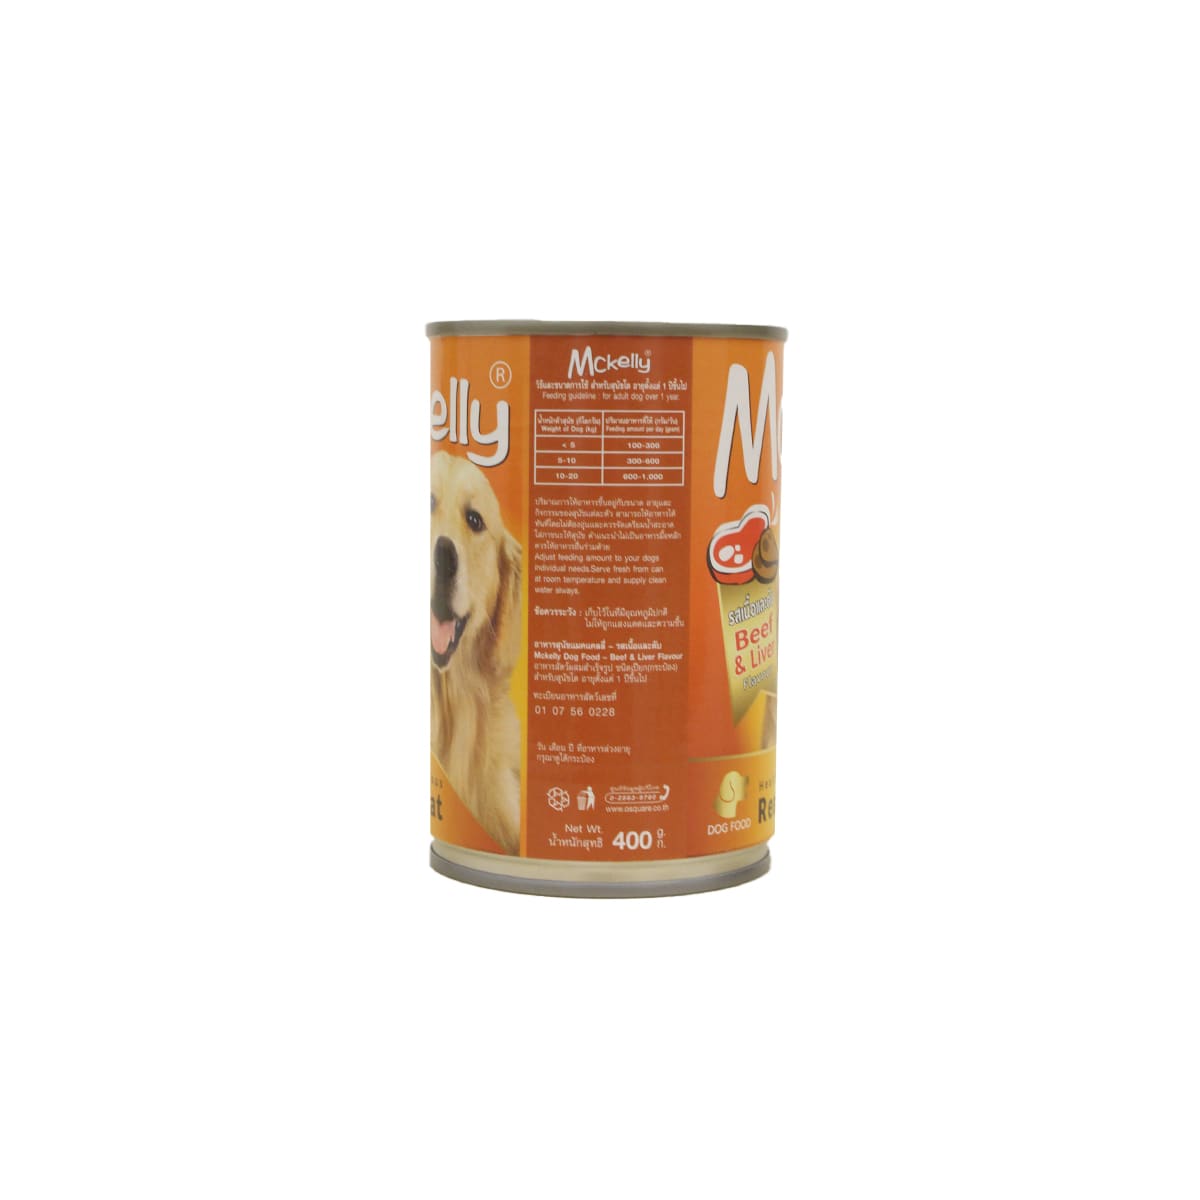 Mckelly แมคเคลลี่ อาหารเปียก แบบกระป๋อง สำหรับสุนัข สูตรเนื้อและตับ 400 g_2